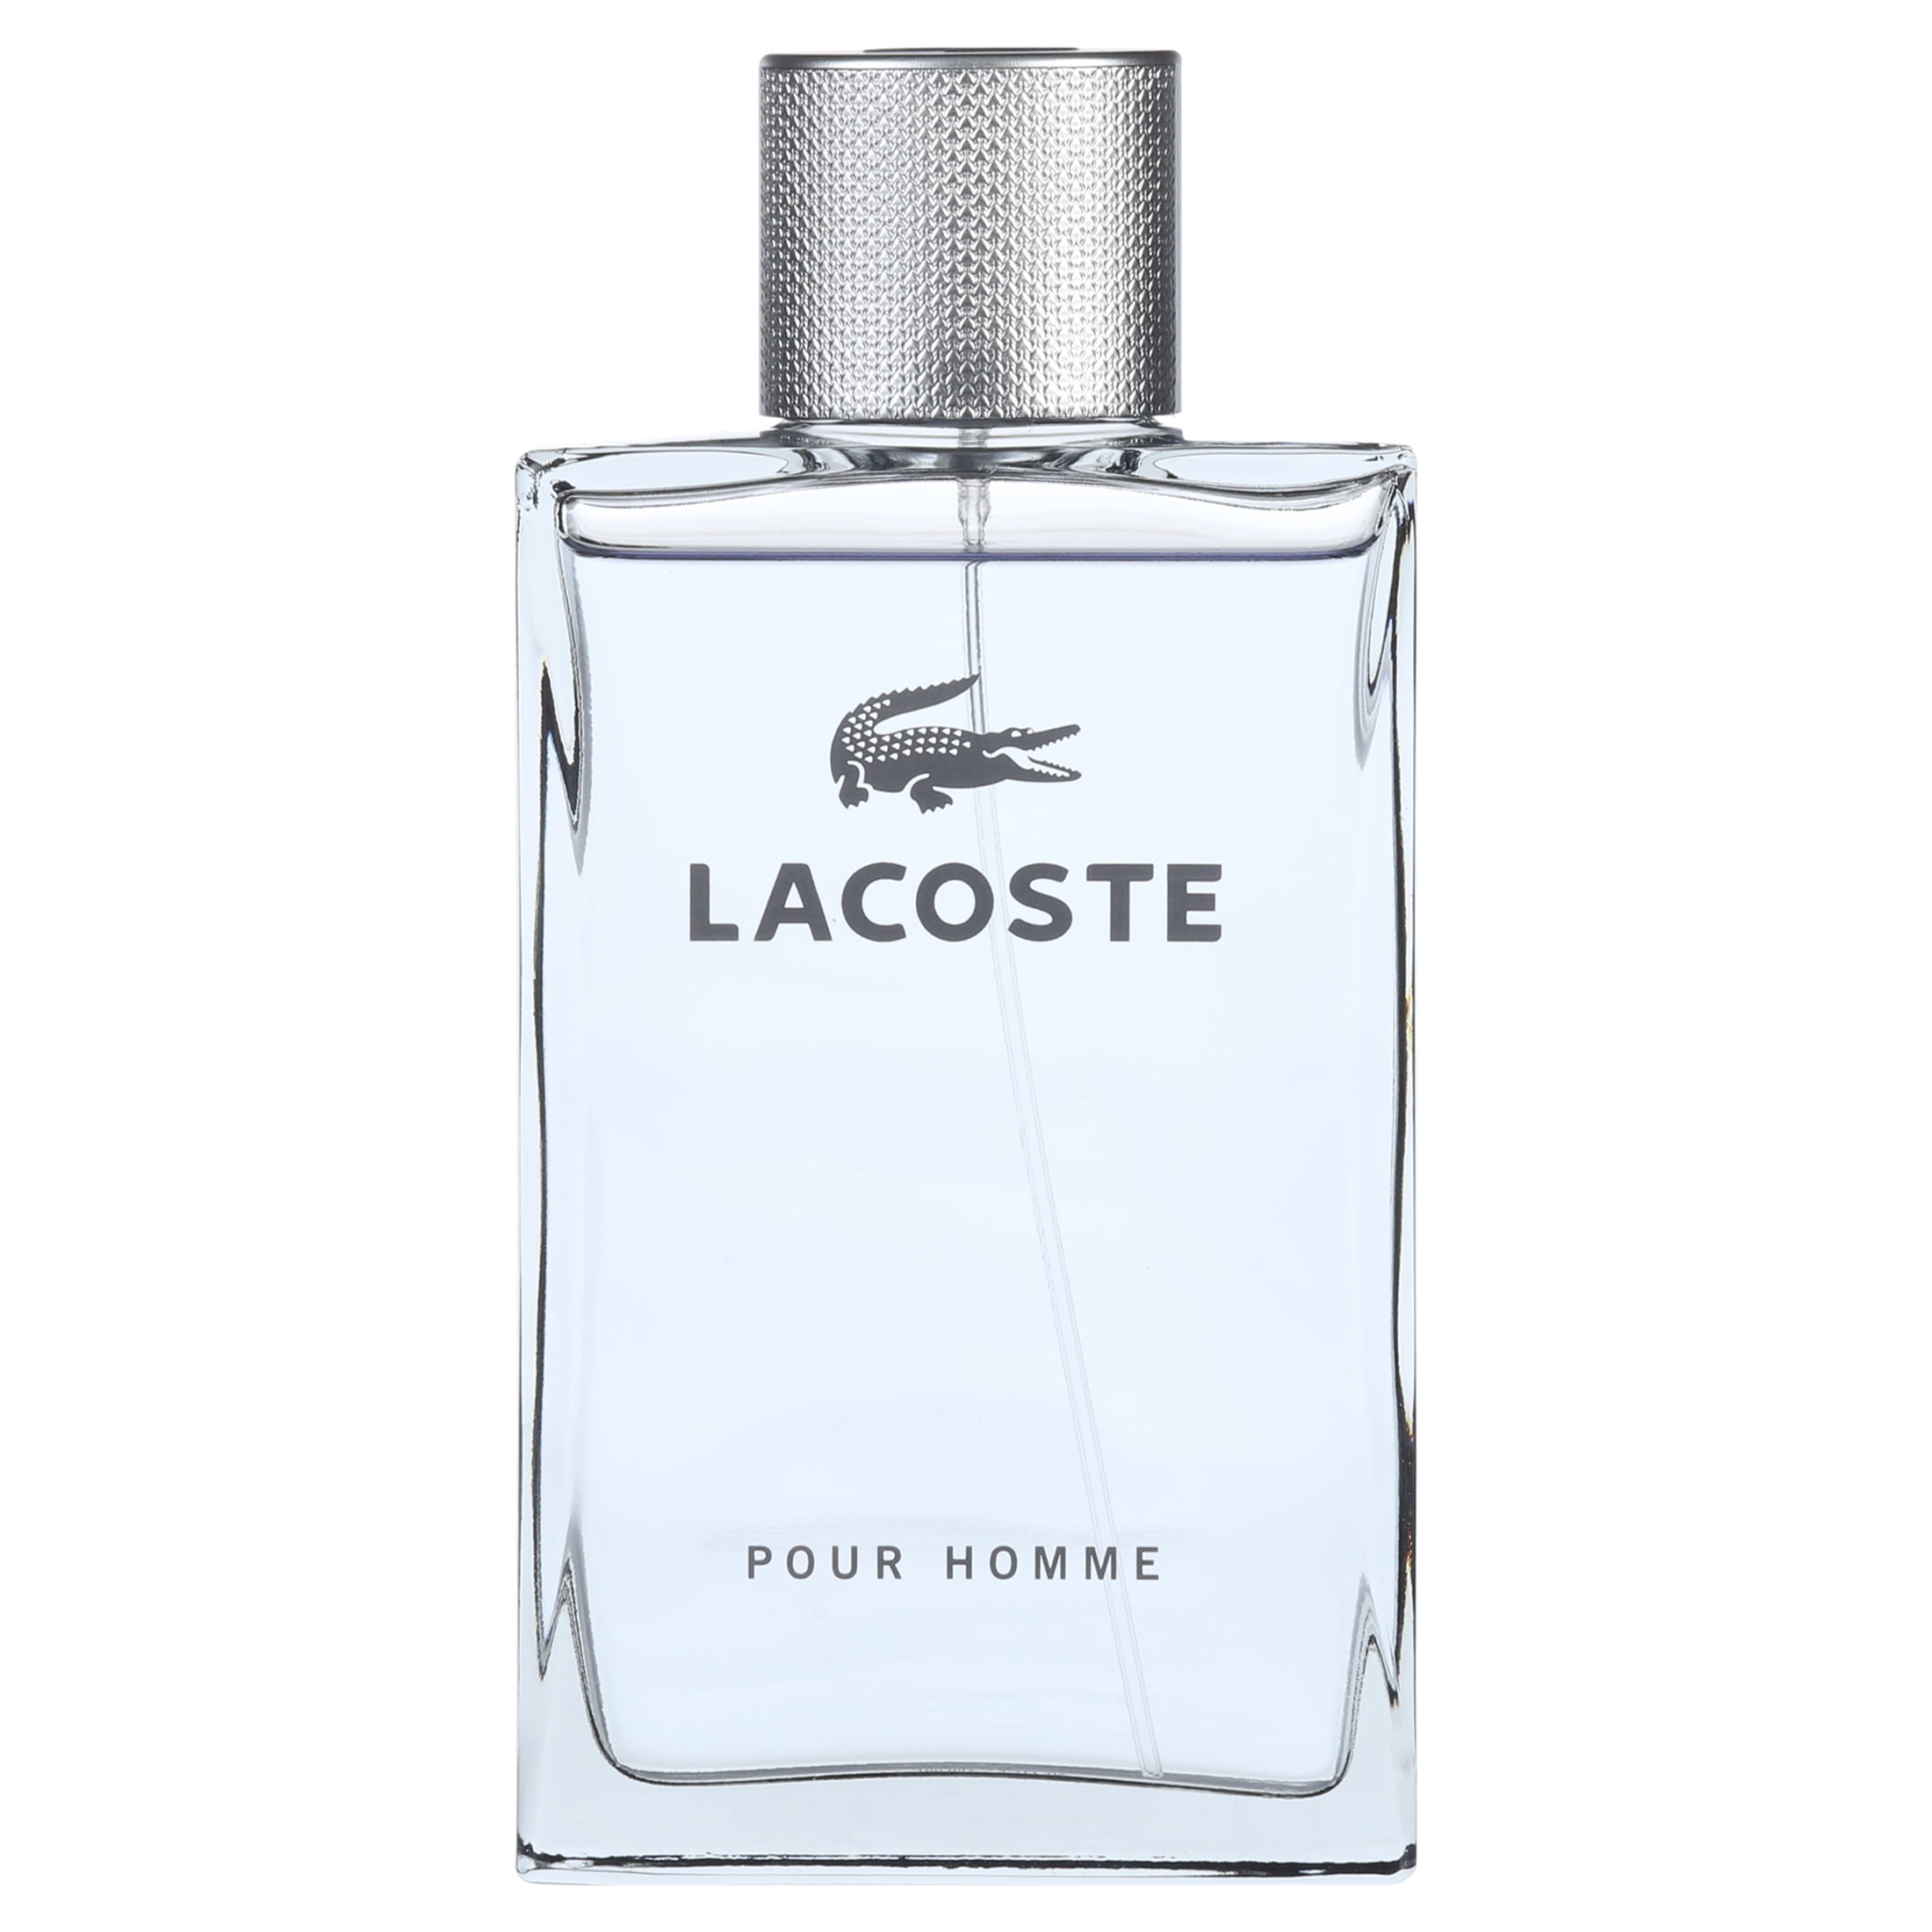 Descent mord kurve Lacoste Pour Homme Eau De Toilette Spray, Cologne for Men, 3.3 oz -  Walmart.com